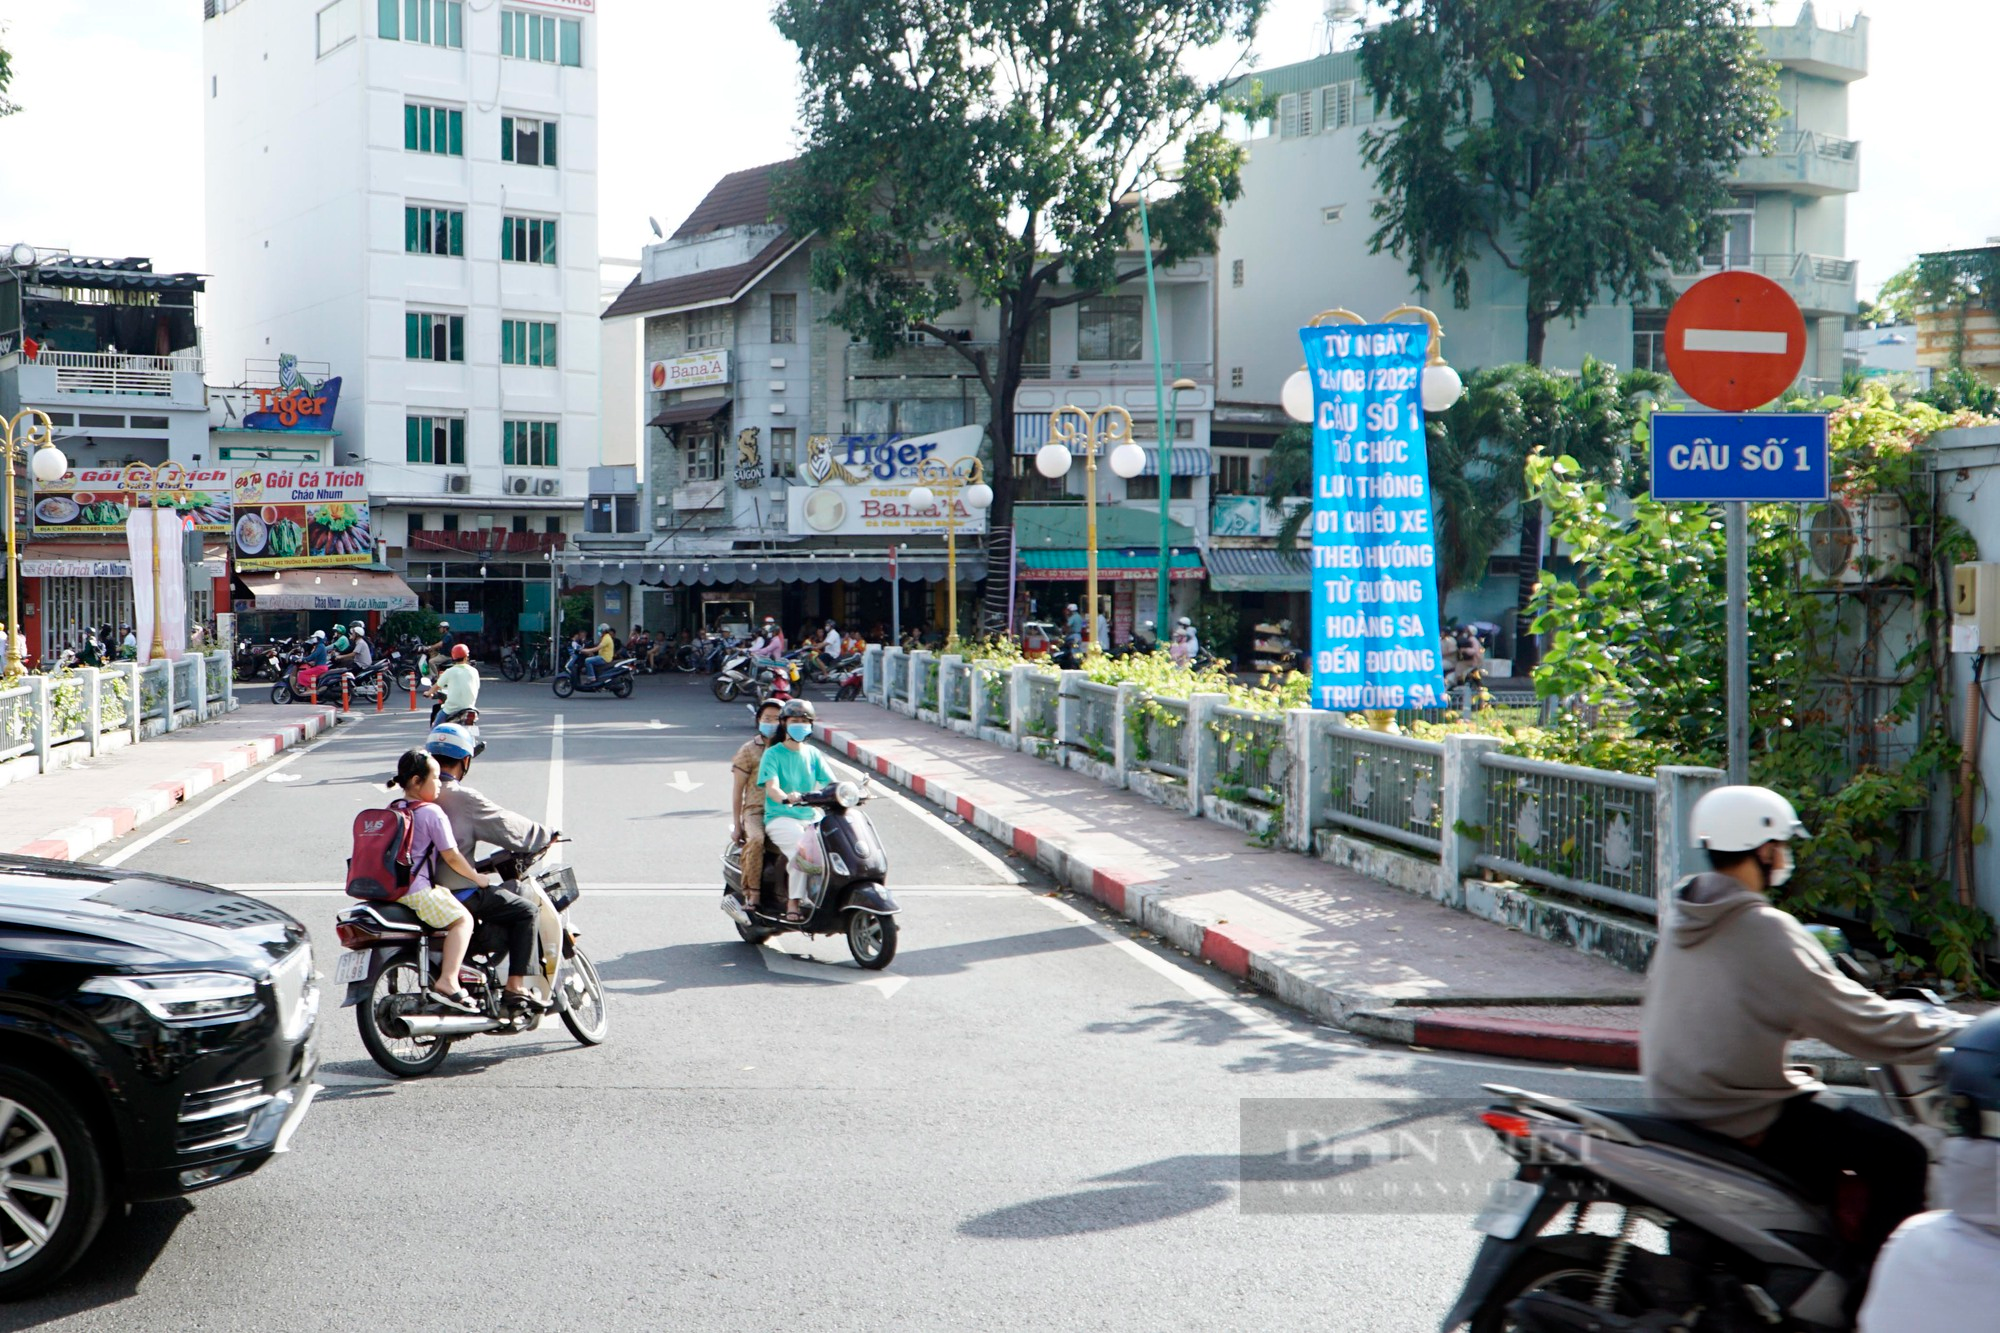 Giao thông lộn xộn trước ngày điều chỉnh tại một số cây cầu trên kênh Nhiêu Lộc-Thị Nghè - Ảnh 2.